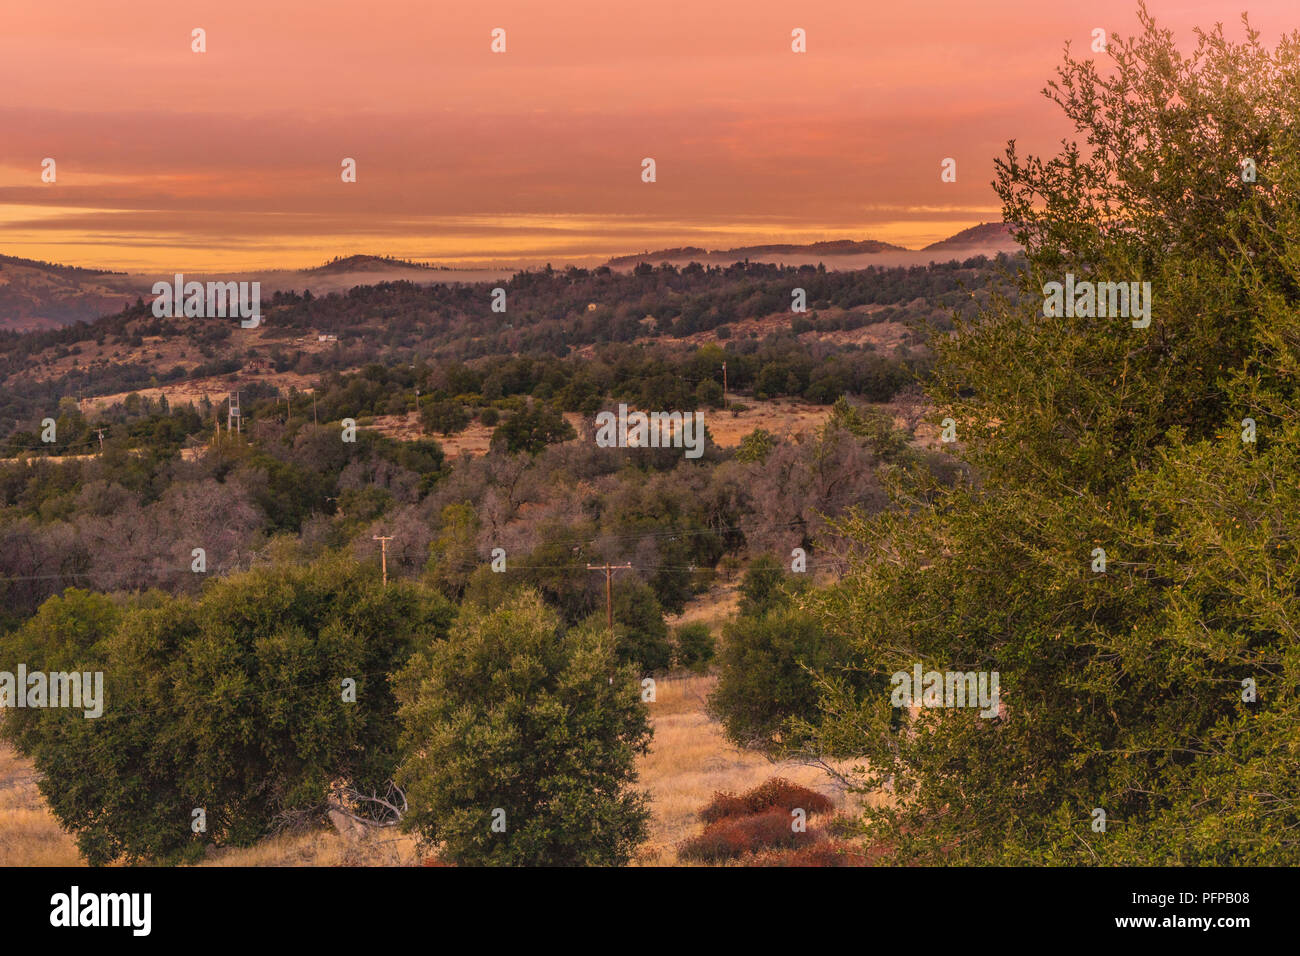 Warme Farbe schönen Sonnenuntergang Himmel, orange, rot, lila Tönen, in Südkalifornien Hügel im Herbst, Grove von lebenden Eichen im Vordergrund, Hügel Stockfoto